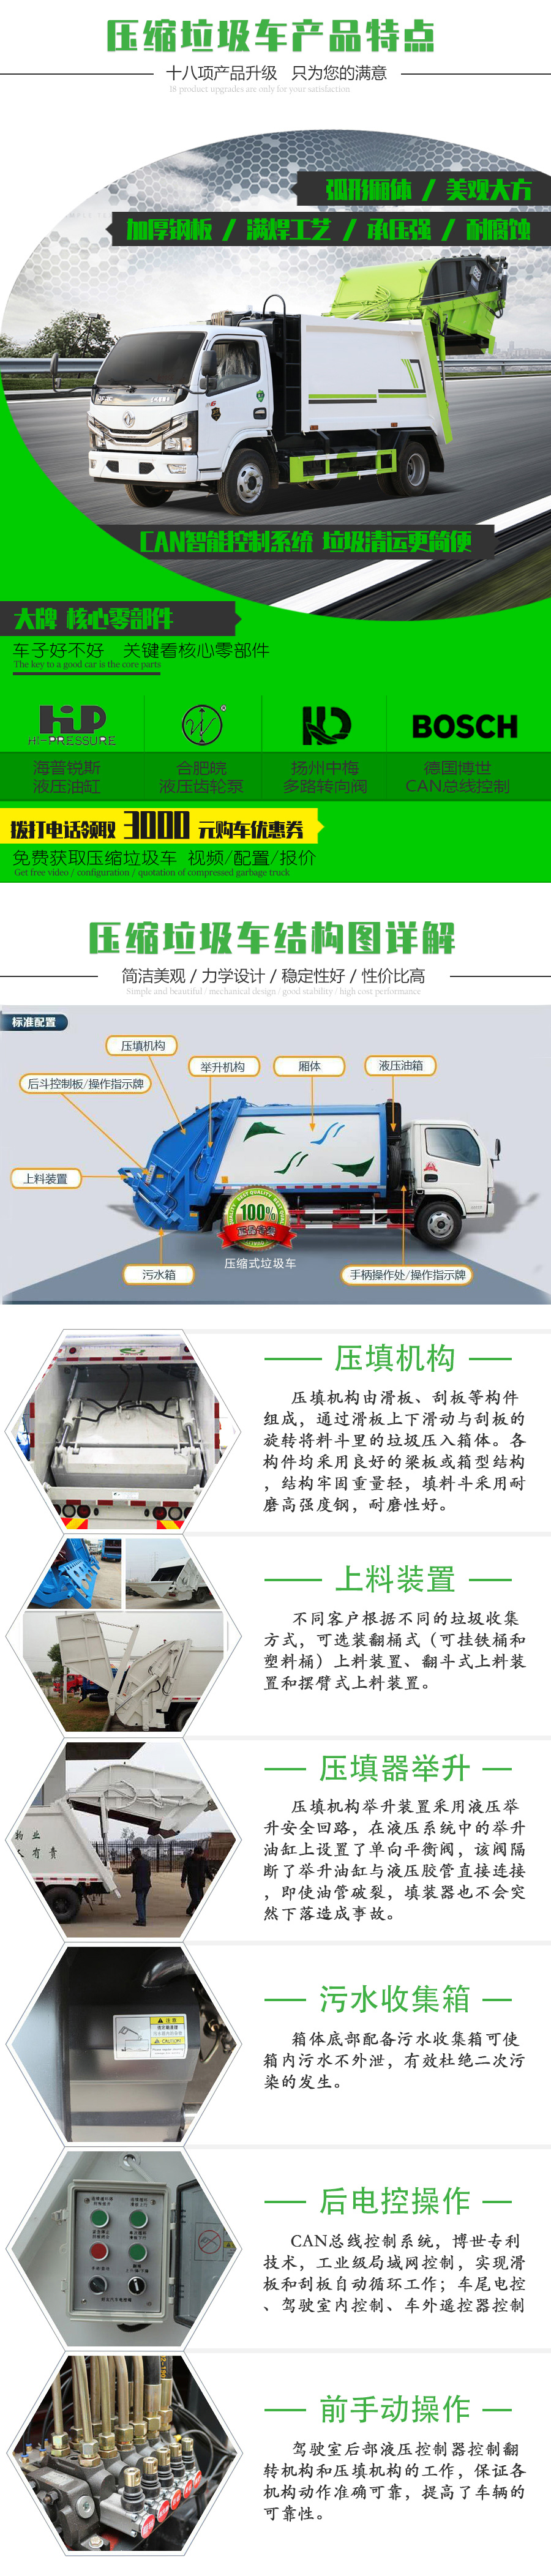 福田牌 国六 1.6吨压缩式垃圾车